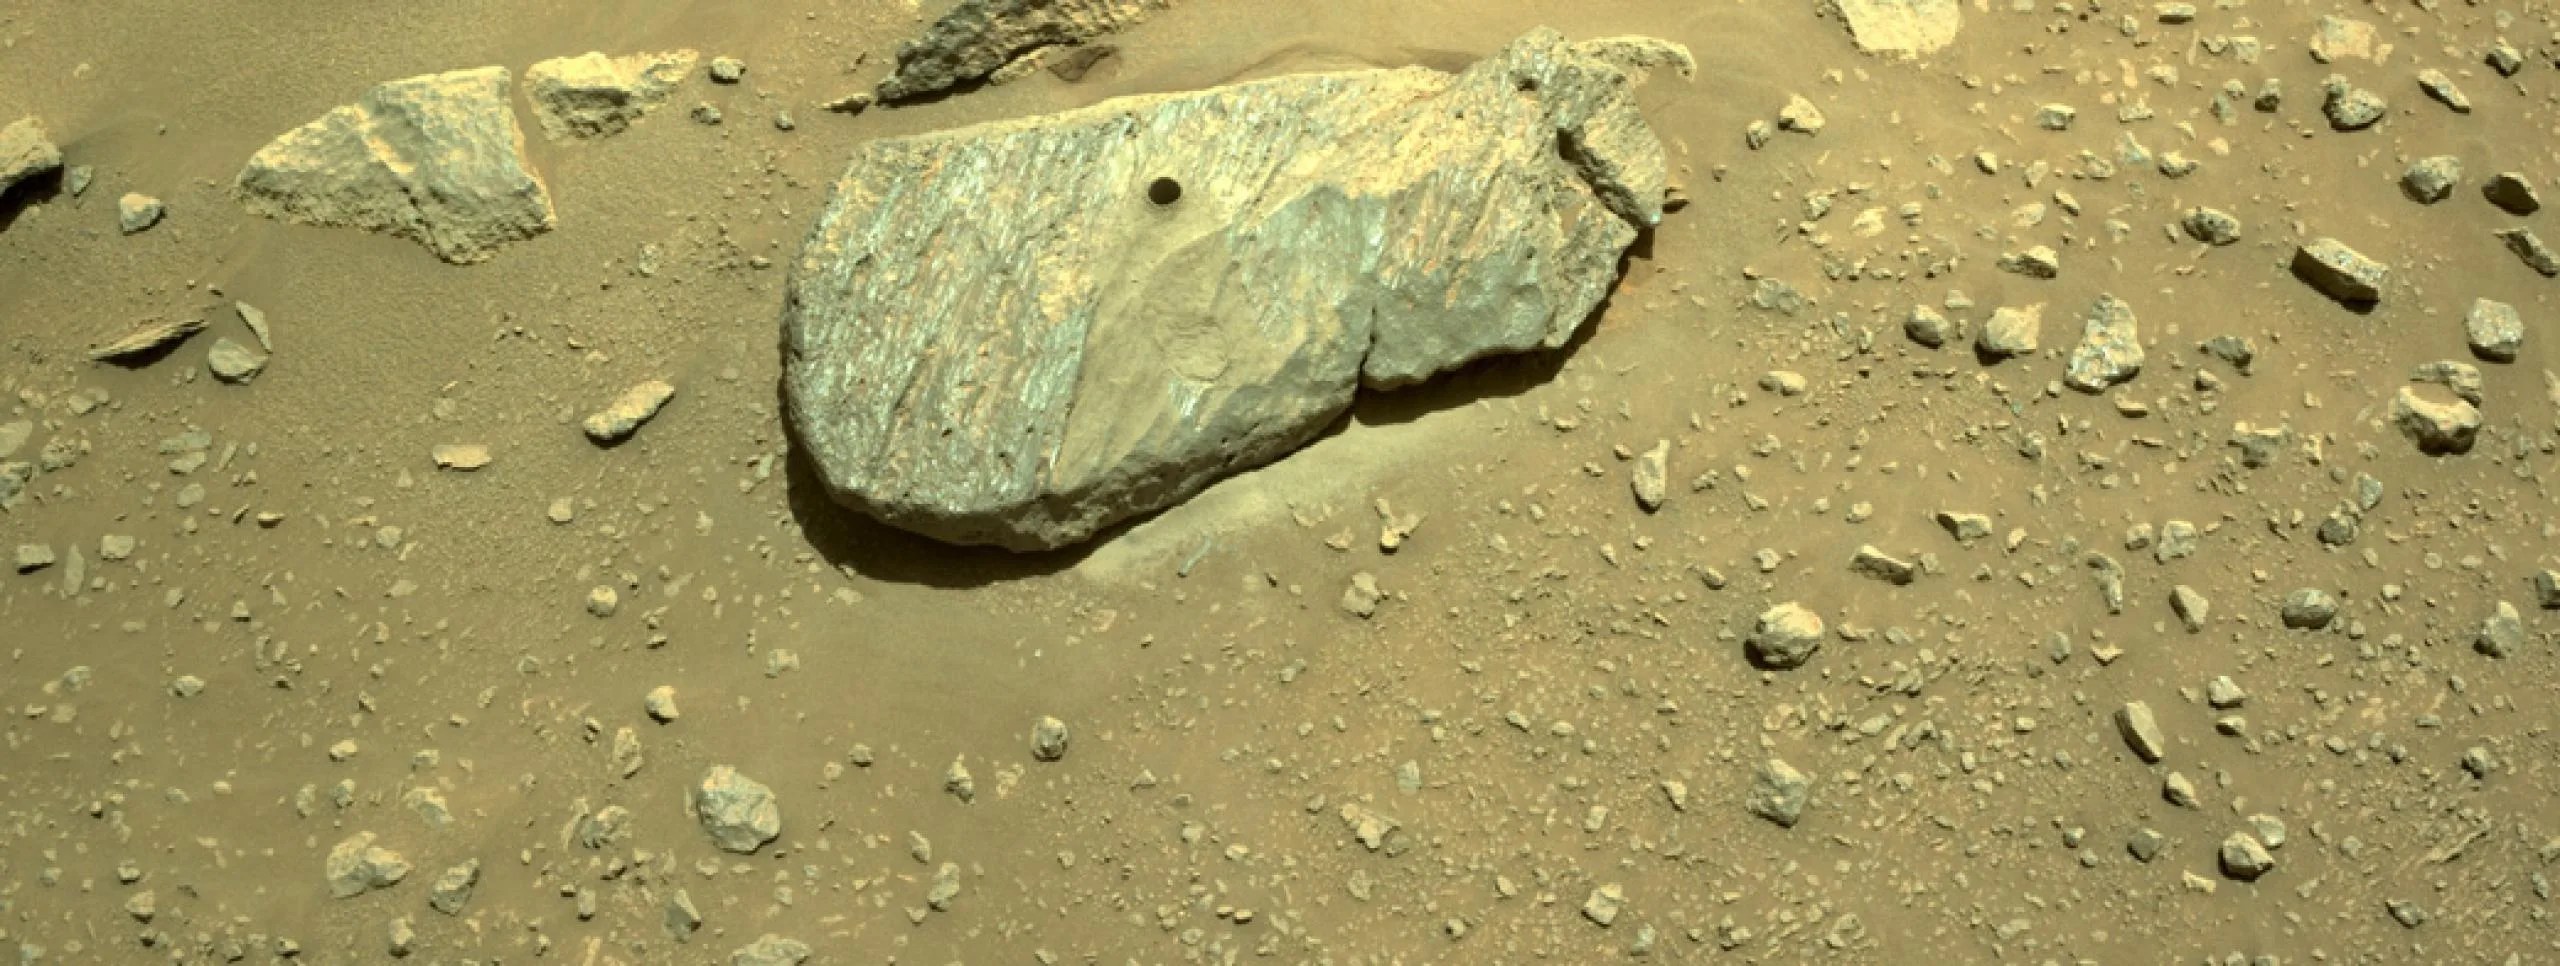 Recolección de primera muestra en Marte